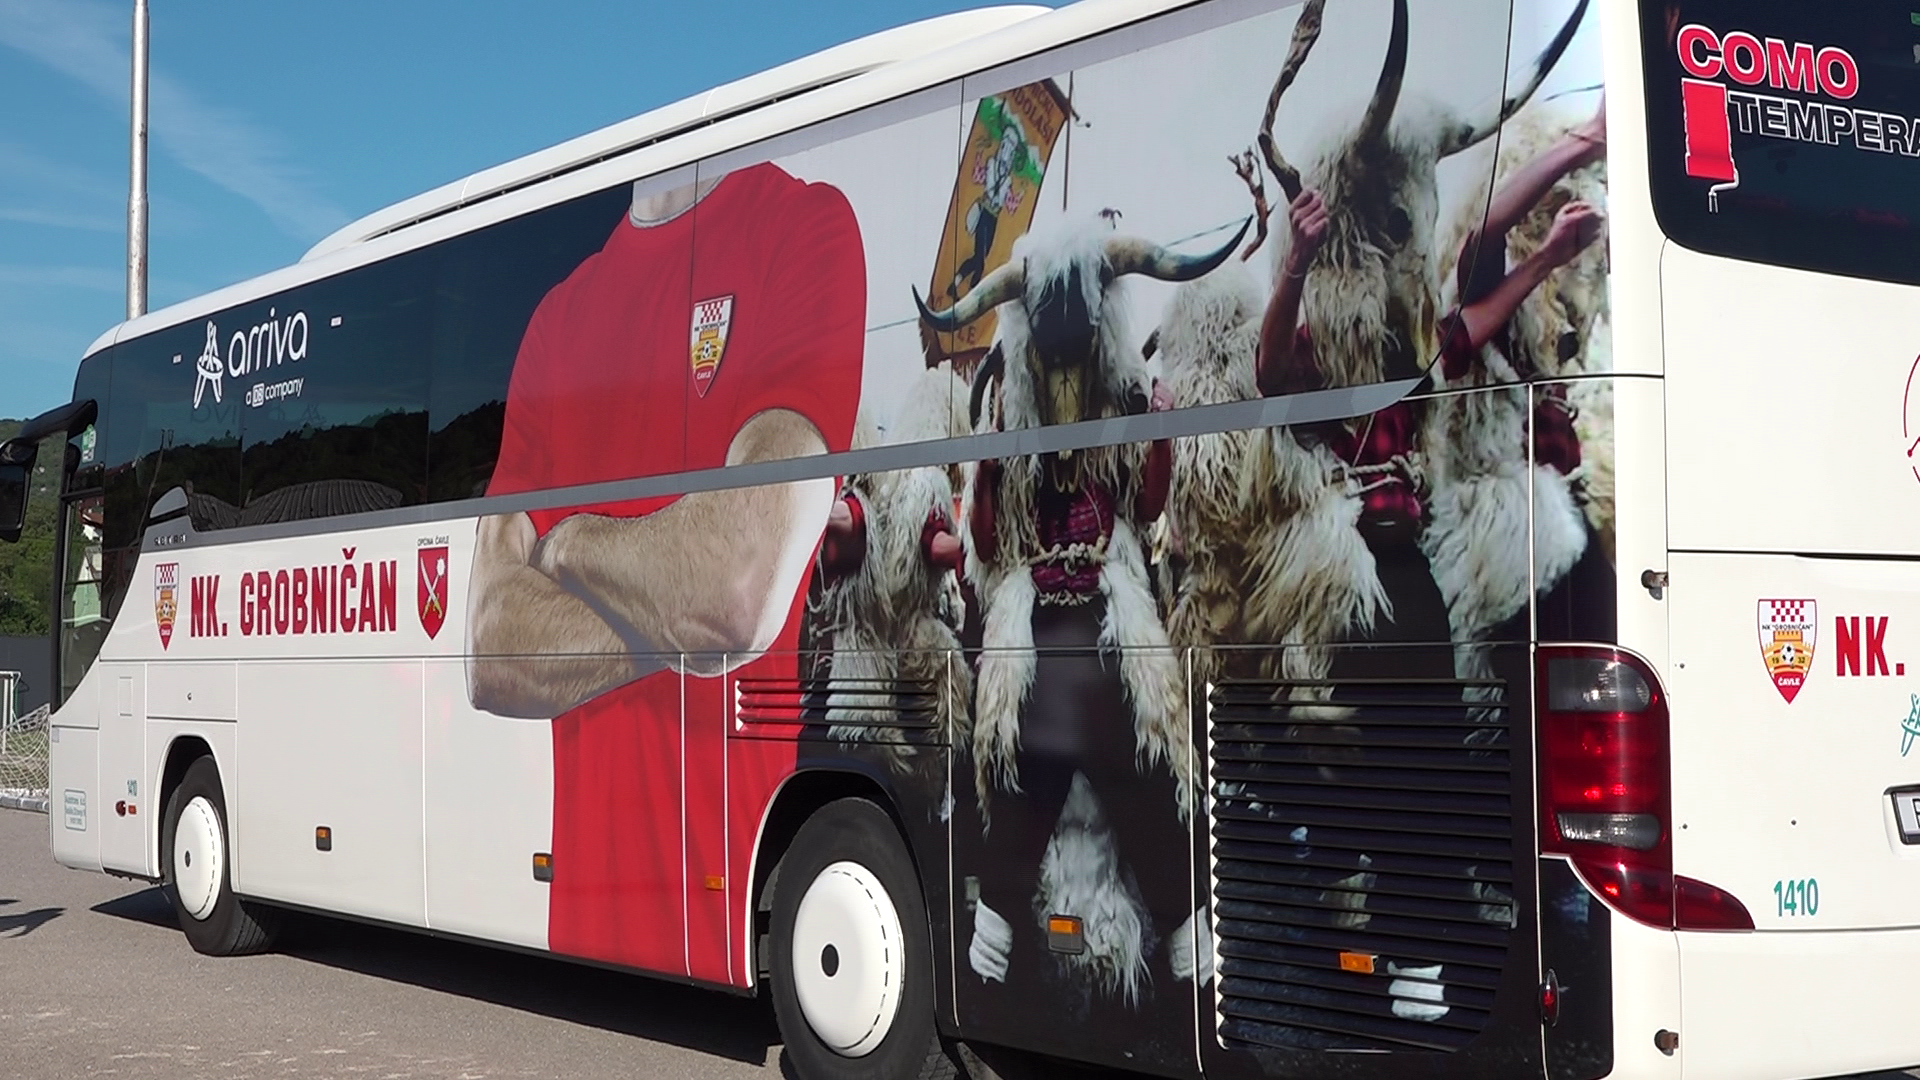 Novi klupski autobus nogometaša Grobničana s motivima Grobničkih dondolaša